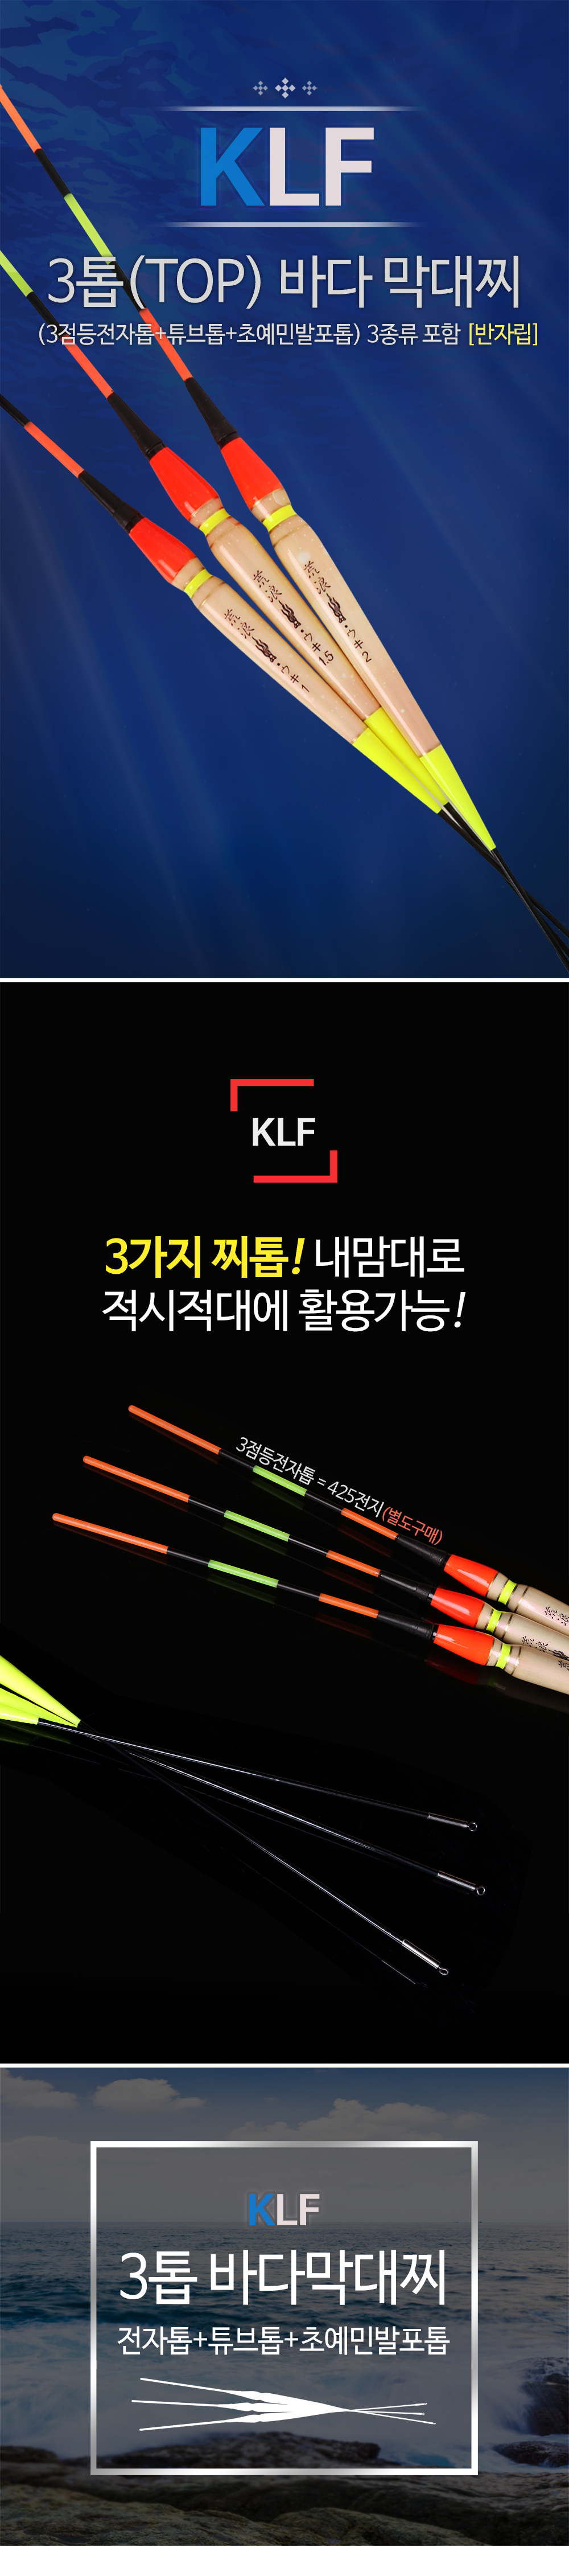 KLF 3 TOP ٴ  3 Ʃ ʿι 3  ٴ ٴڸ ڸ ٴٸ 